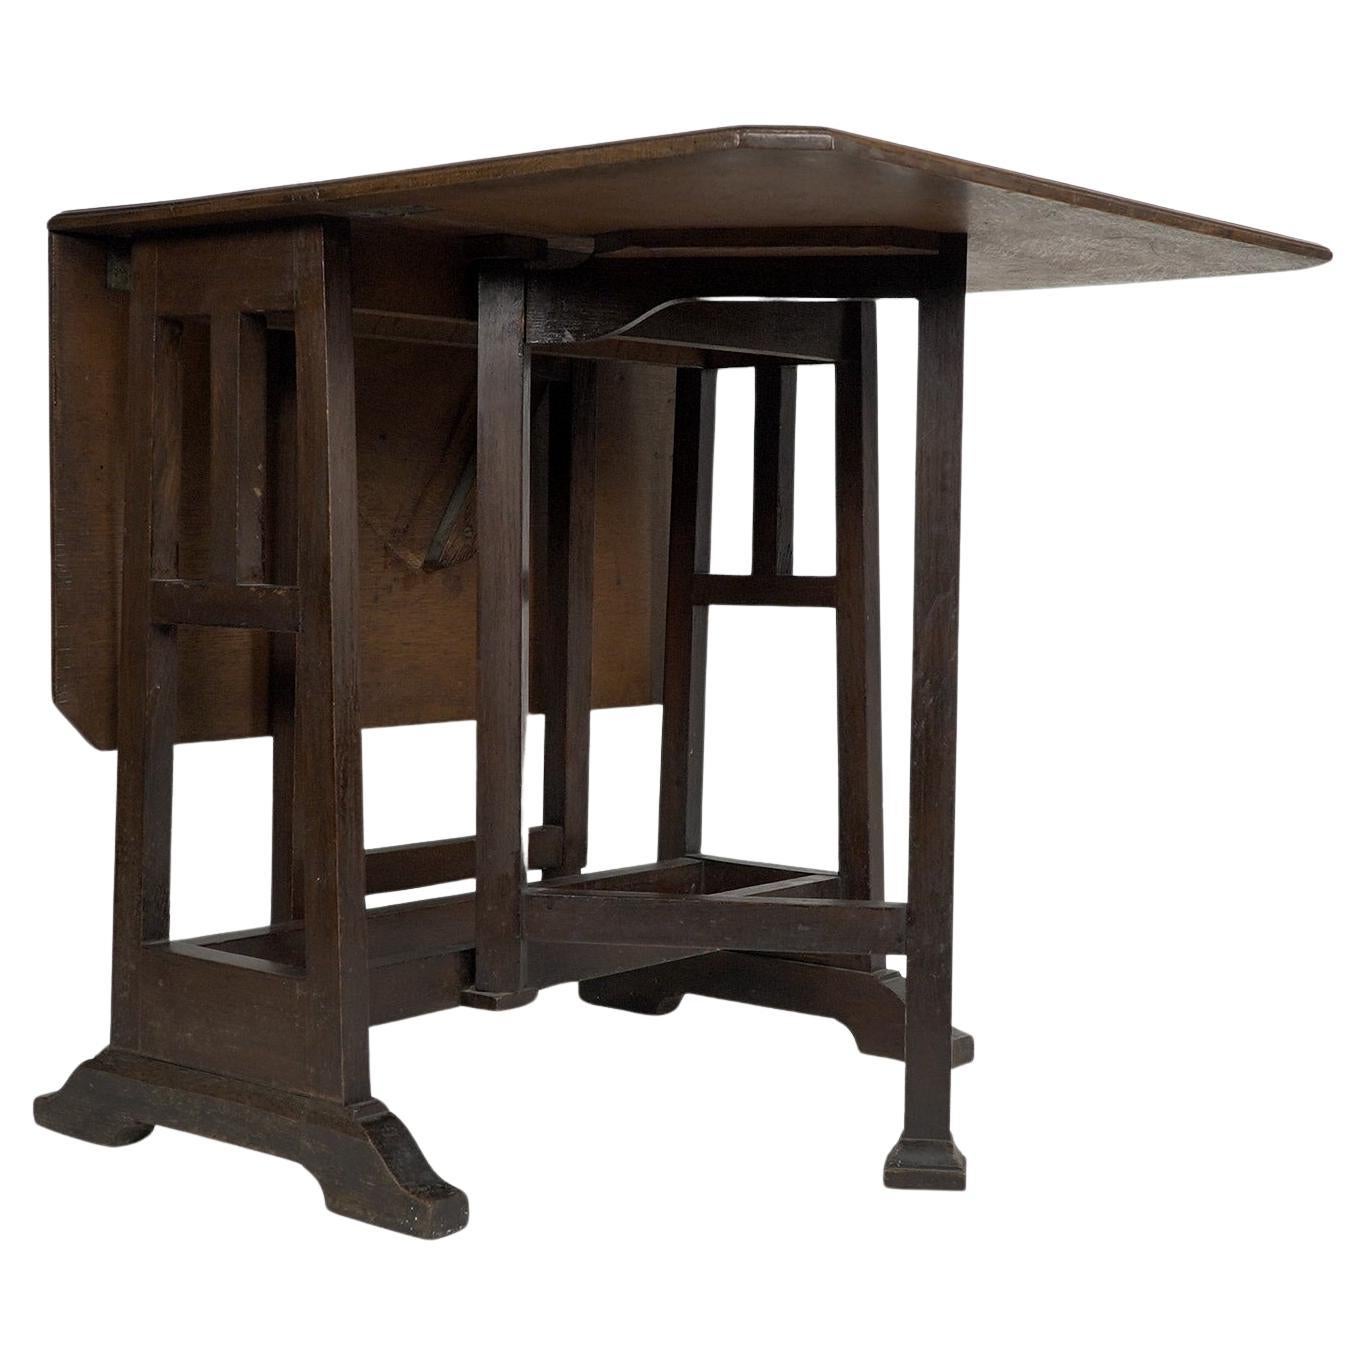 Liberty and Co (atribué). Une table à abattant en chêne de bonne qualité, de style Arts & Crafts